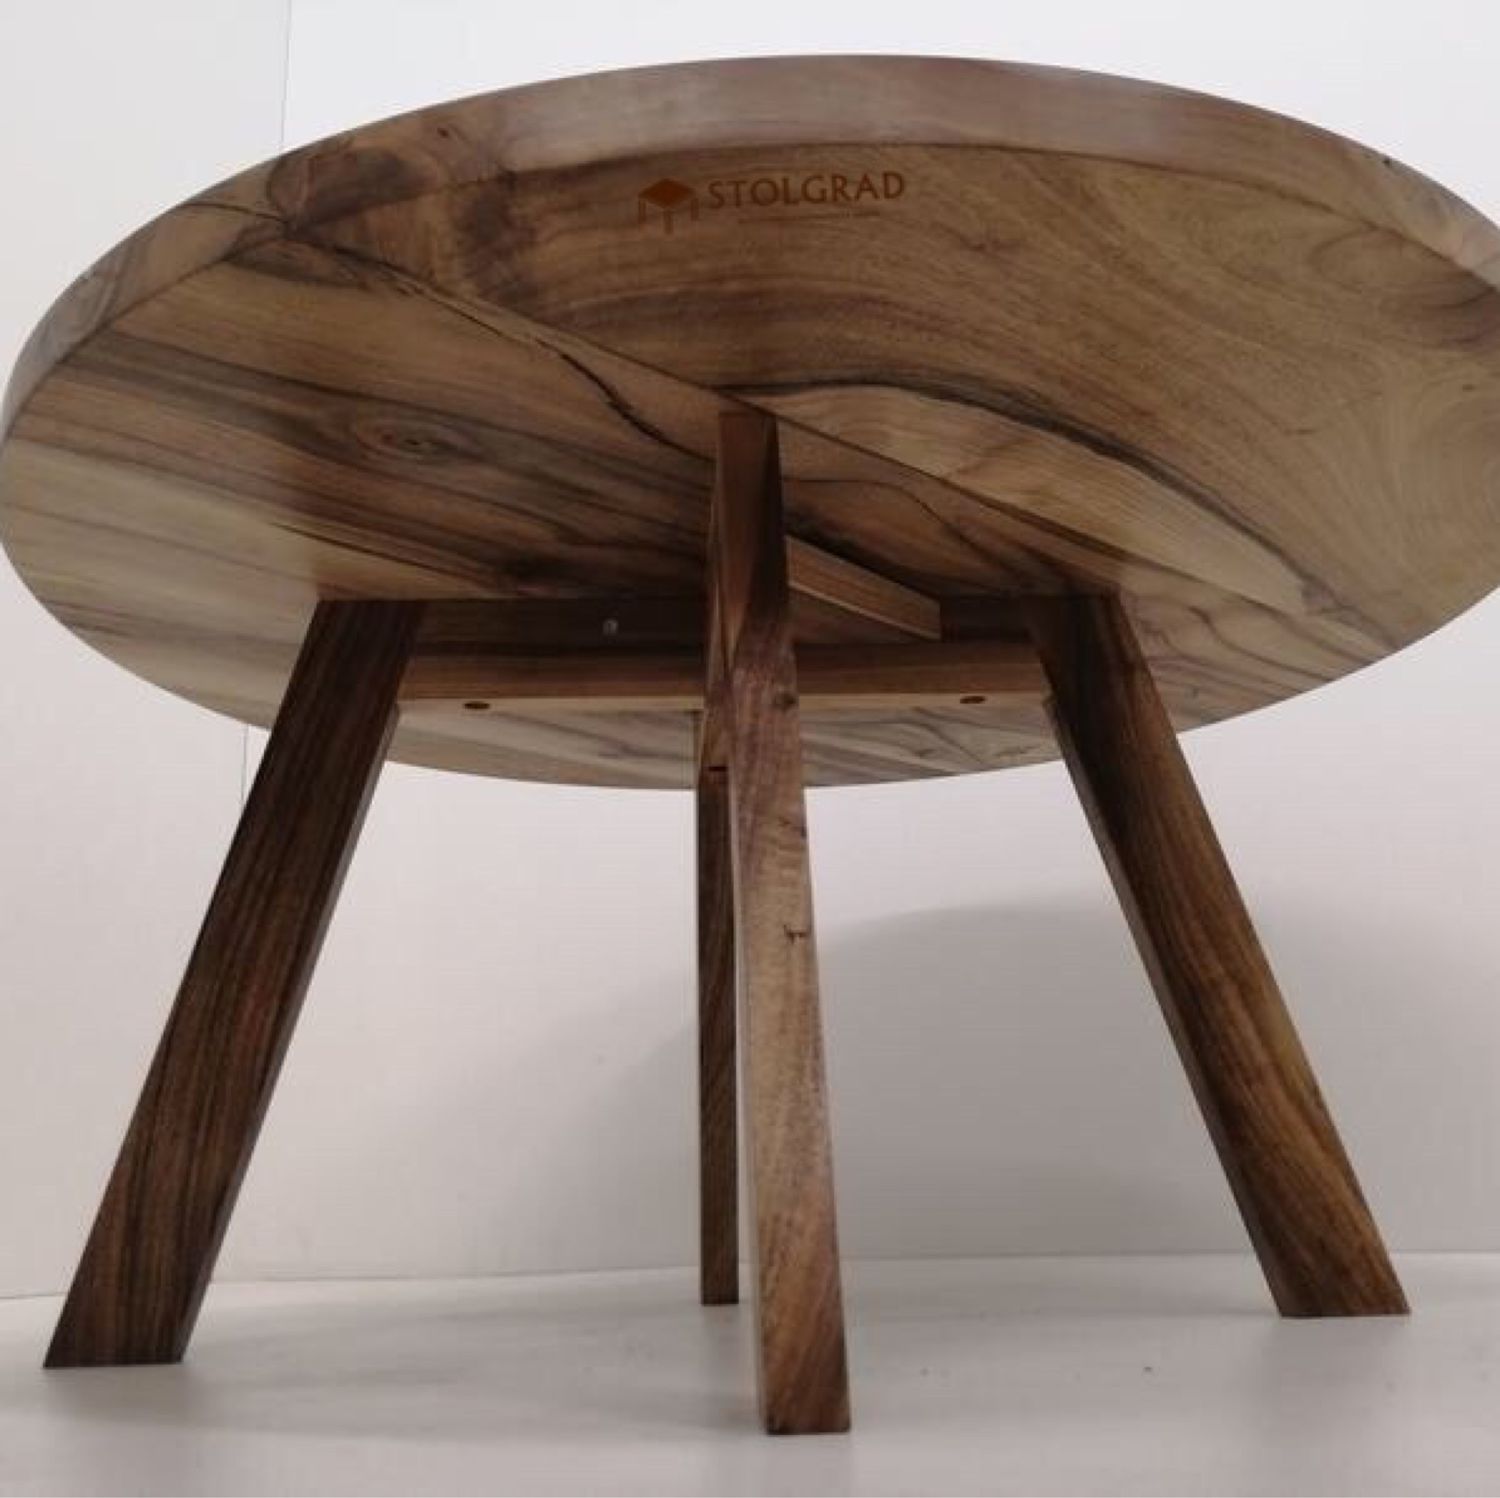 Столик из дерева круглый. Журнальный столик из слэба дуба. Круглый журнальный столик лофт слэб. Круглый деревянный стол. Кофейный столик из дерева круглый.